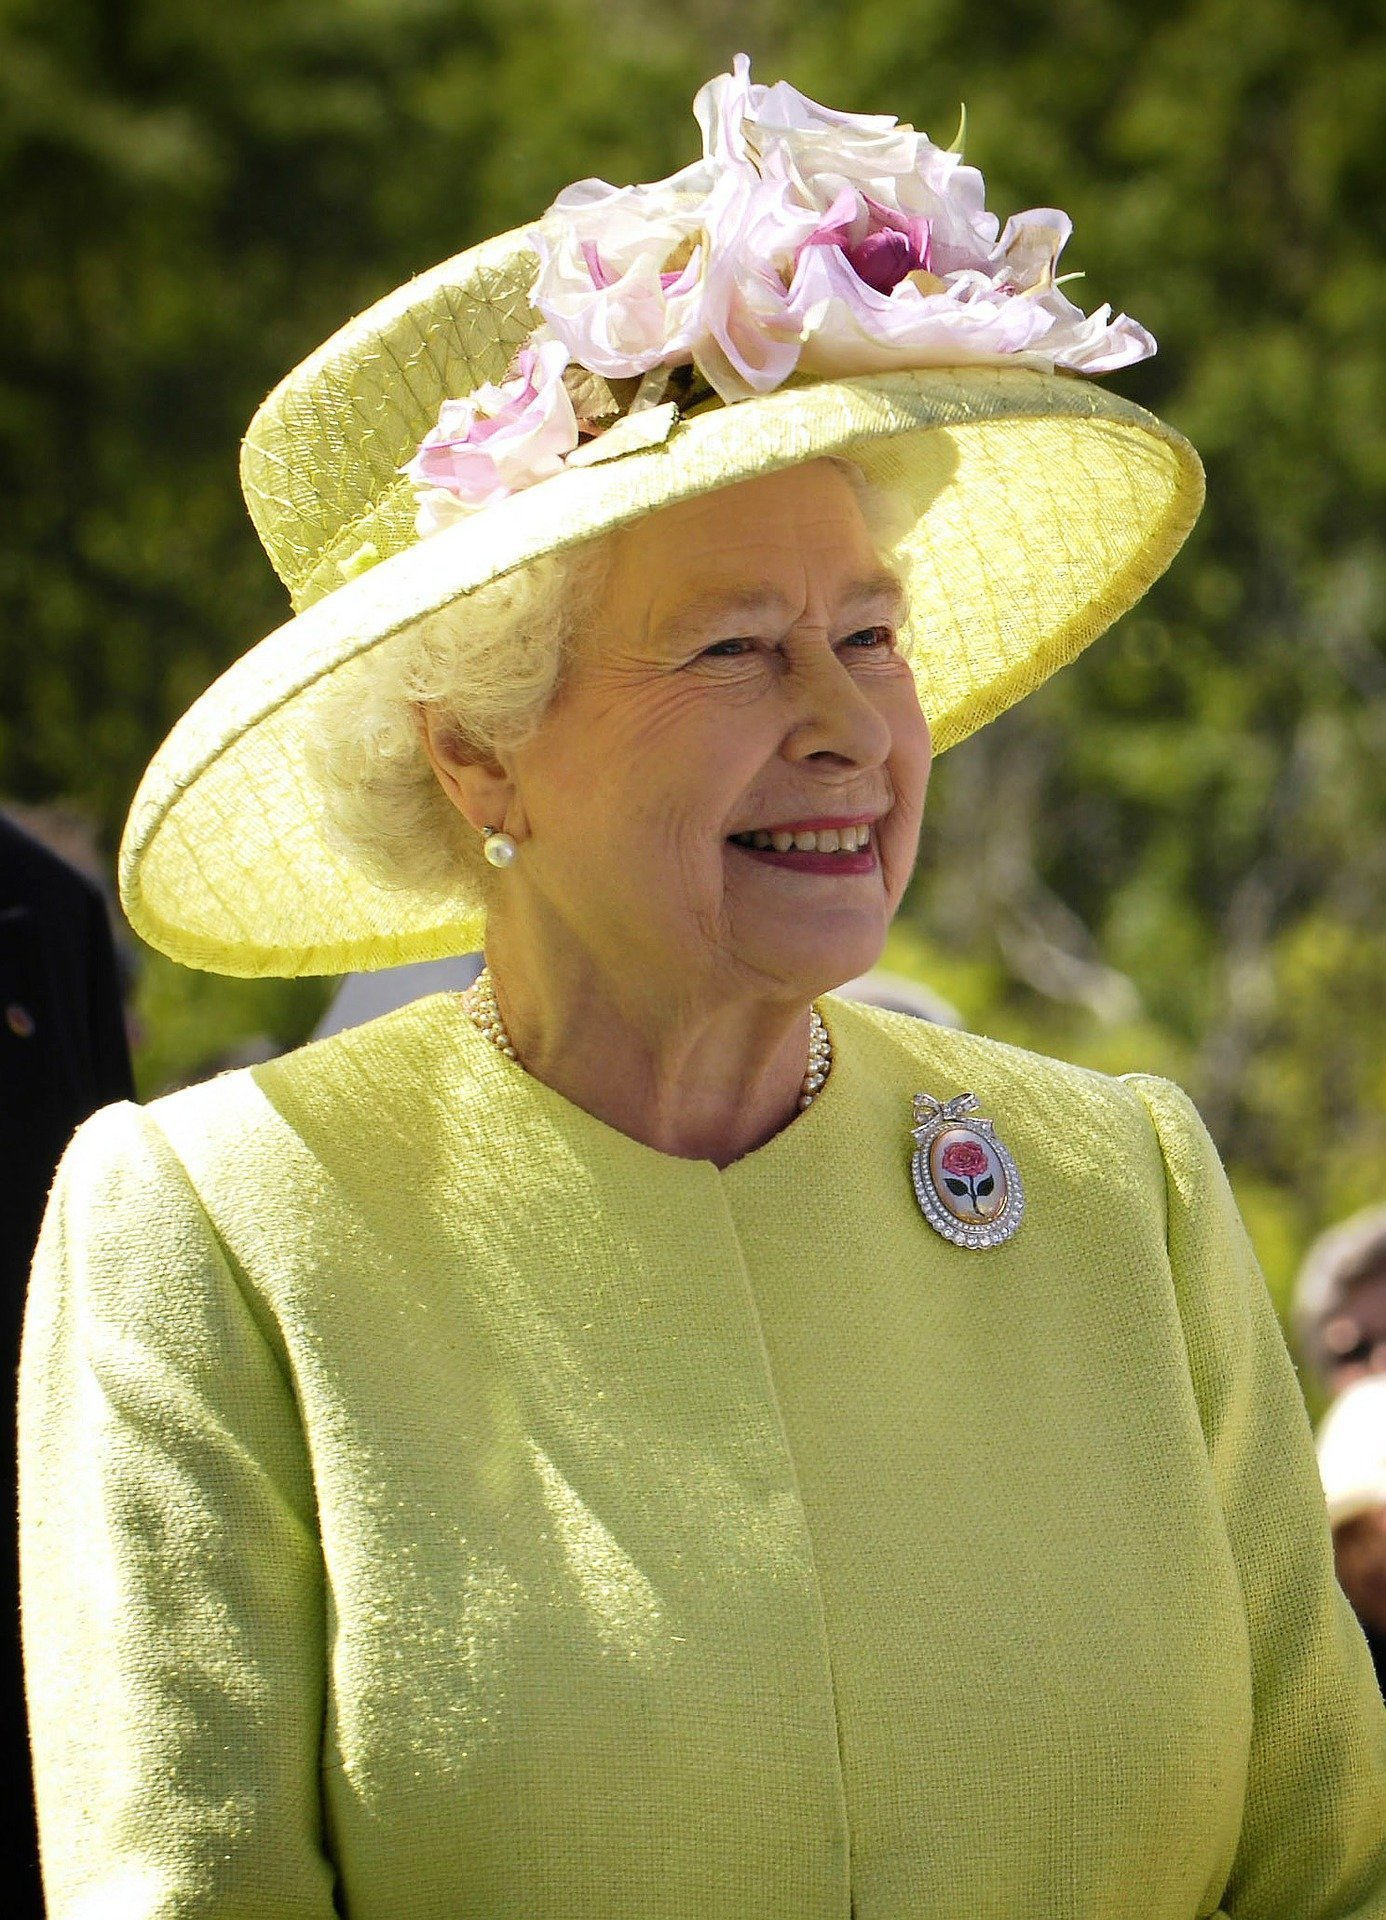 Regina Elisabeta a II-a a Marii Britanii şi-a reluat activităţile, la doar patru zile de la moartea prinţului Philip